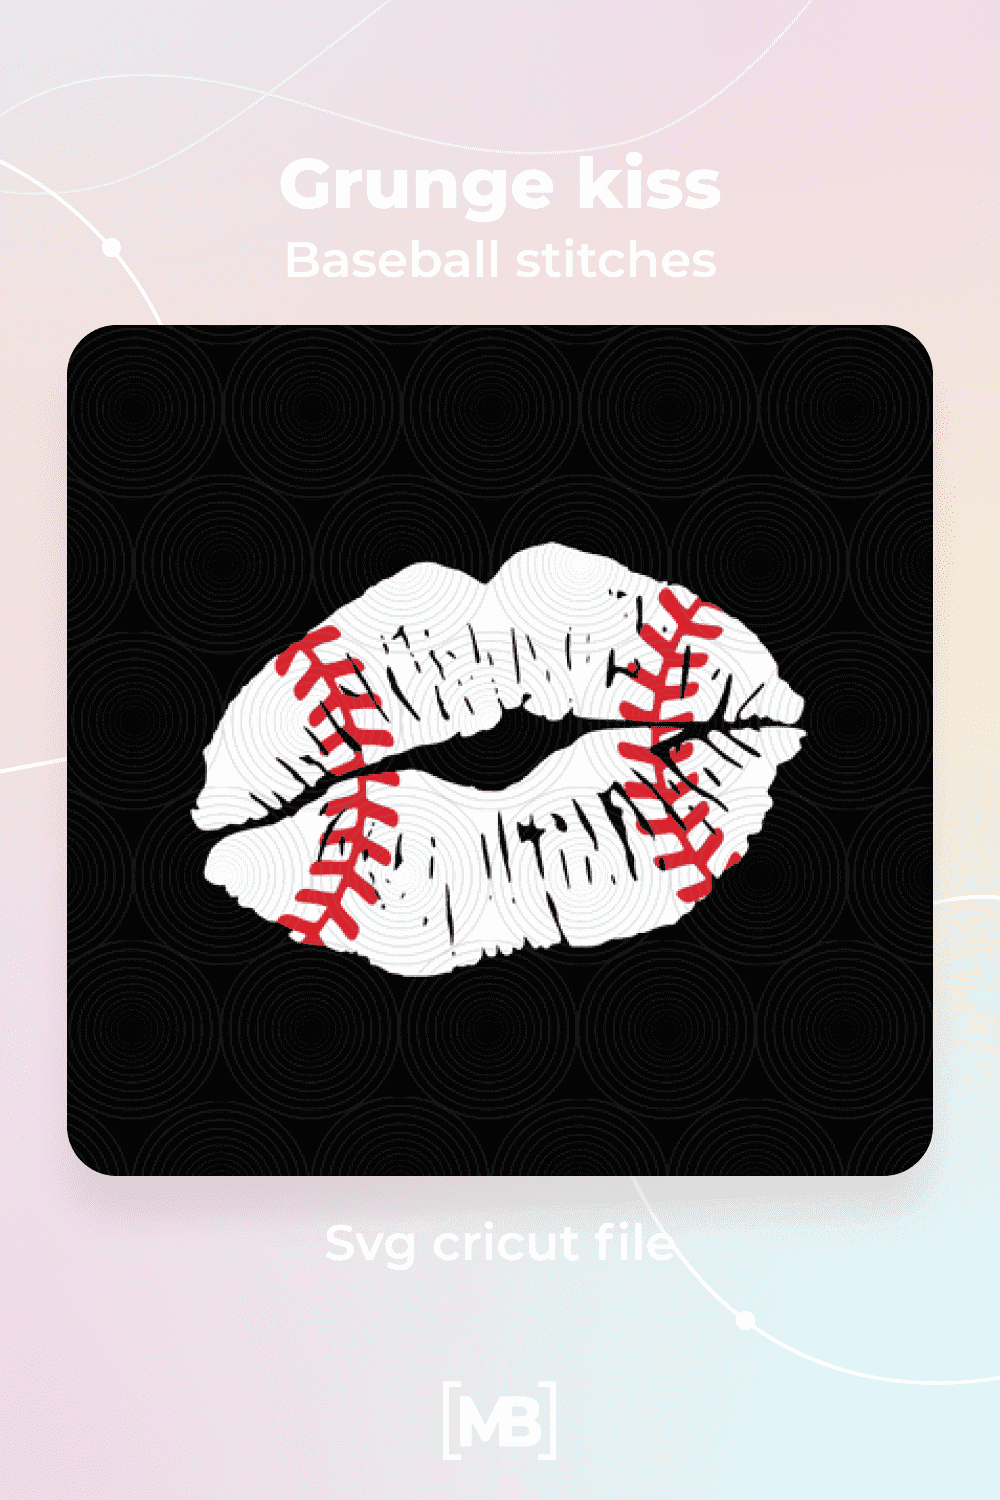 Grunge kiss baseball stitches Svg cricut file.